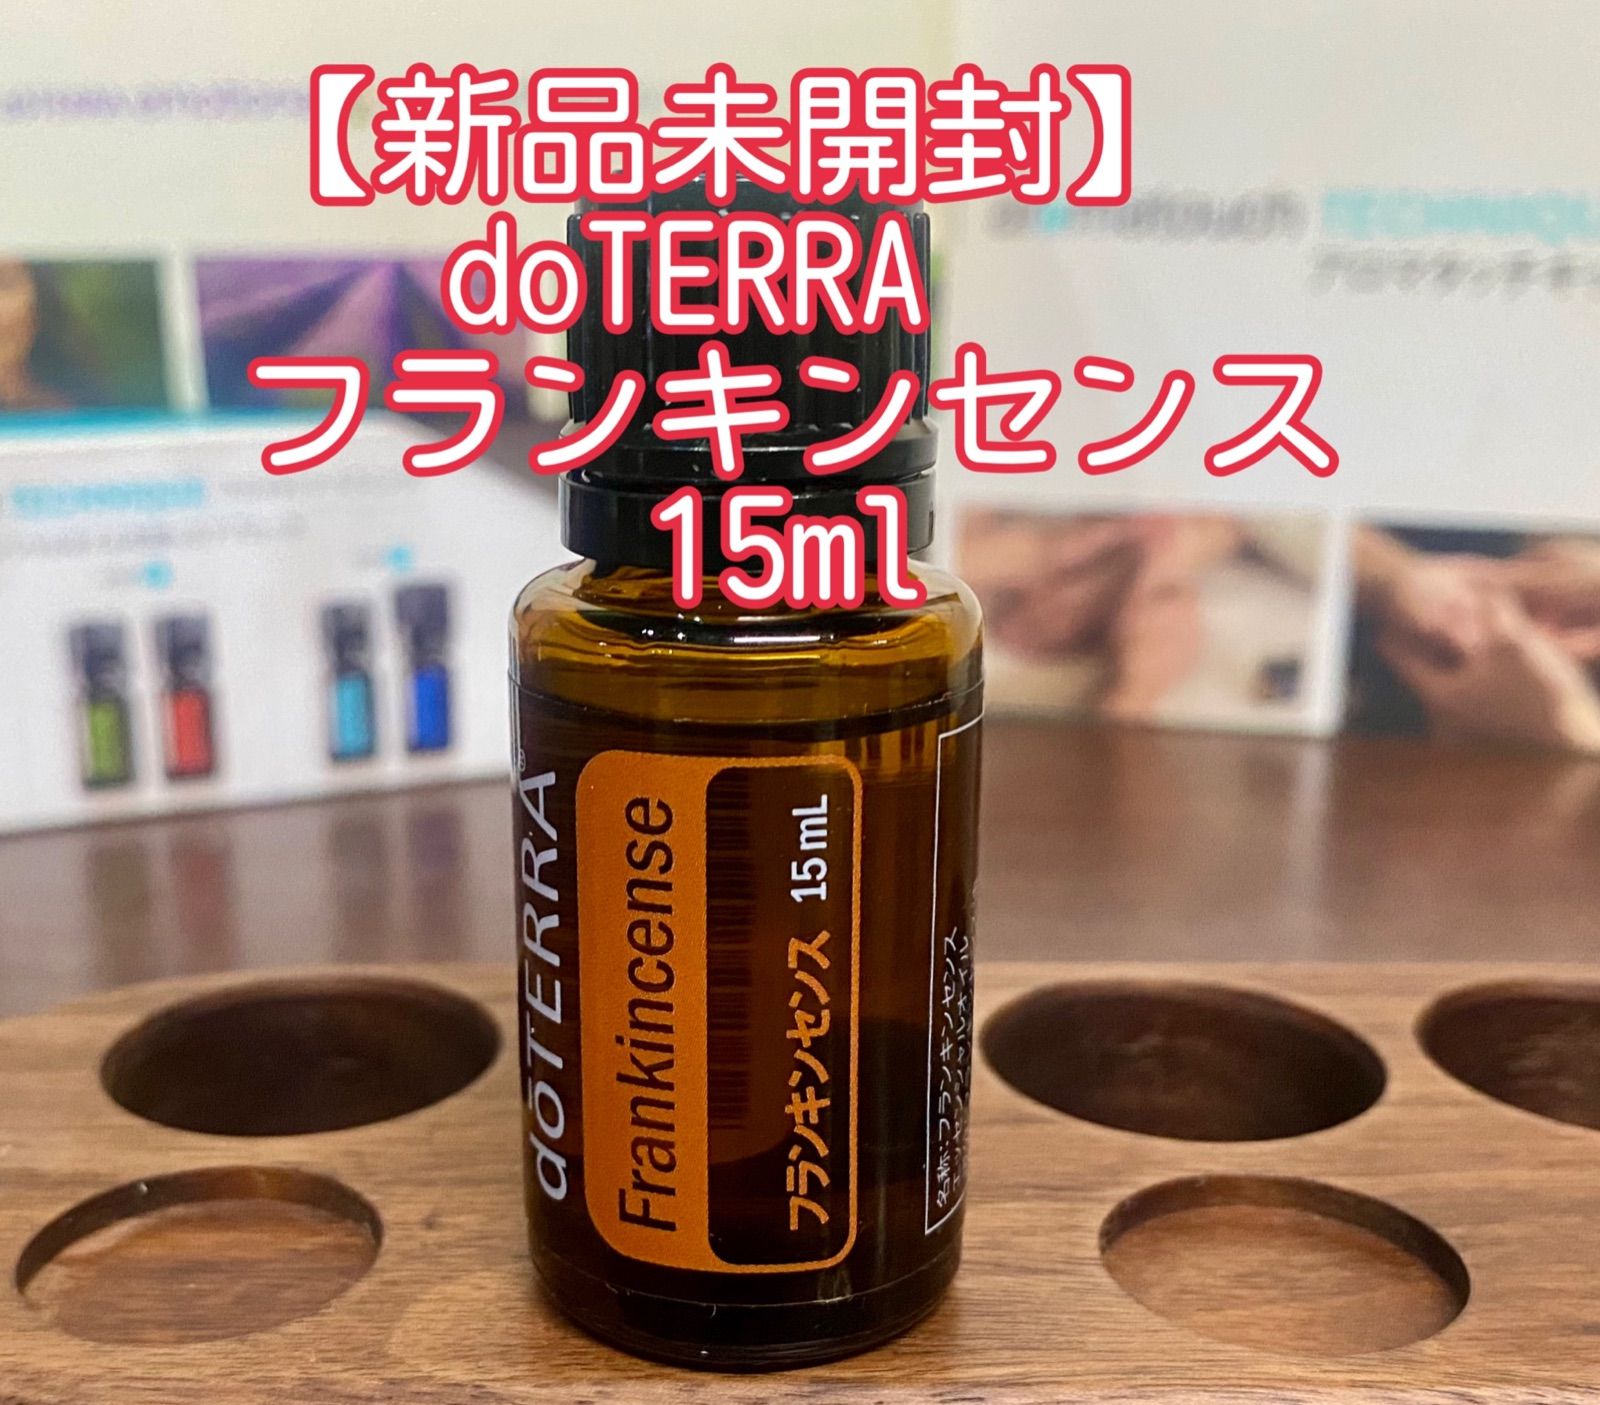 【ドテラ】doTERRA フランキンセンス新品15ml